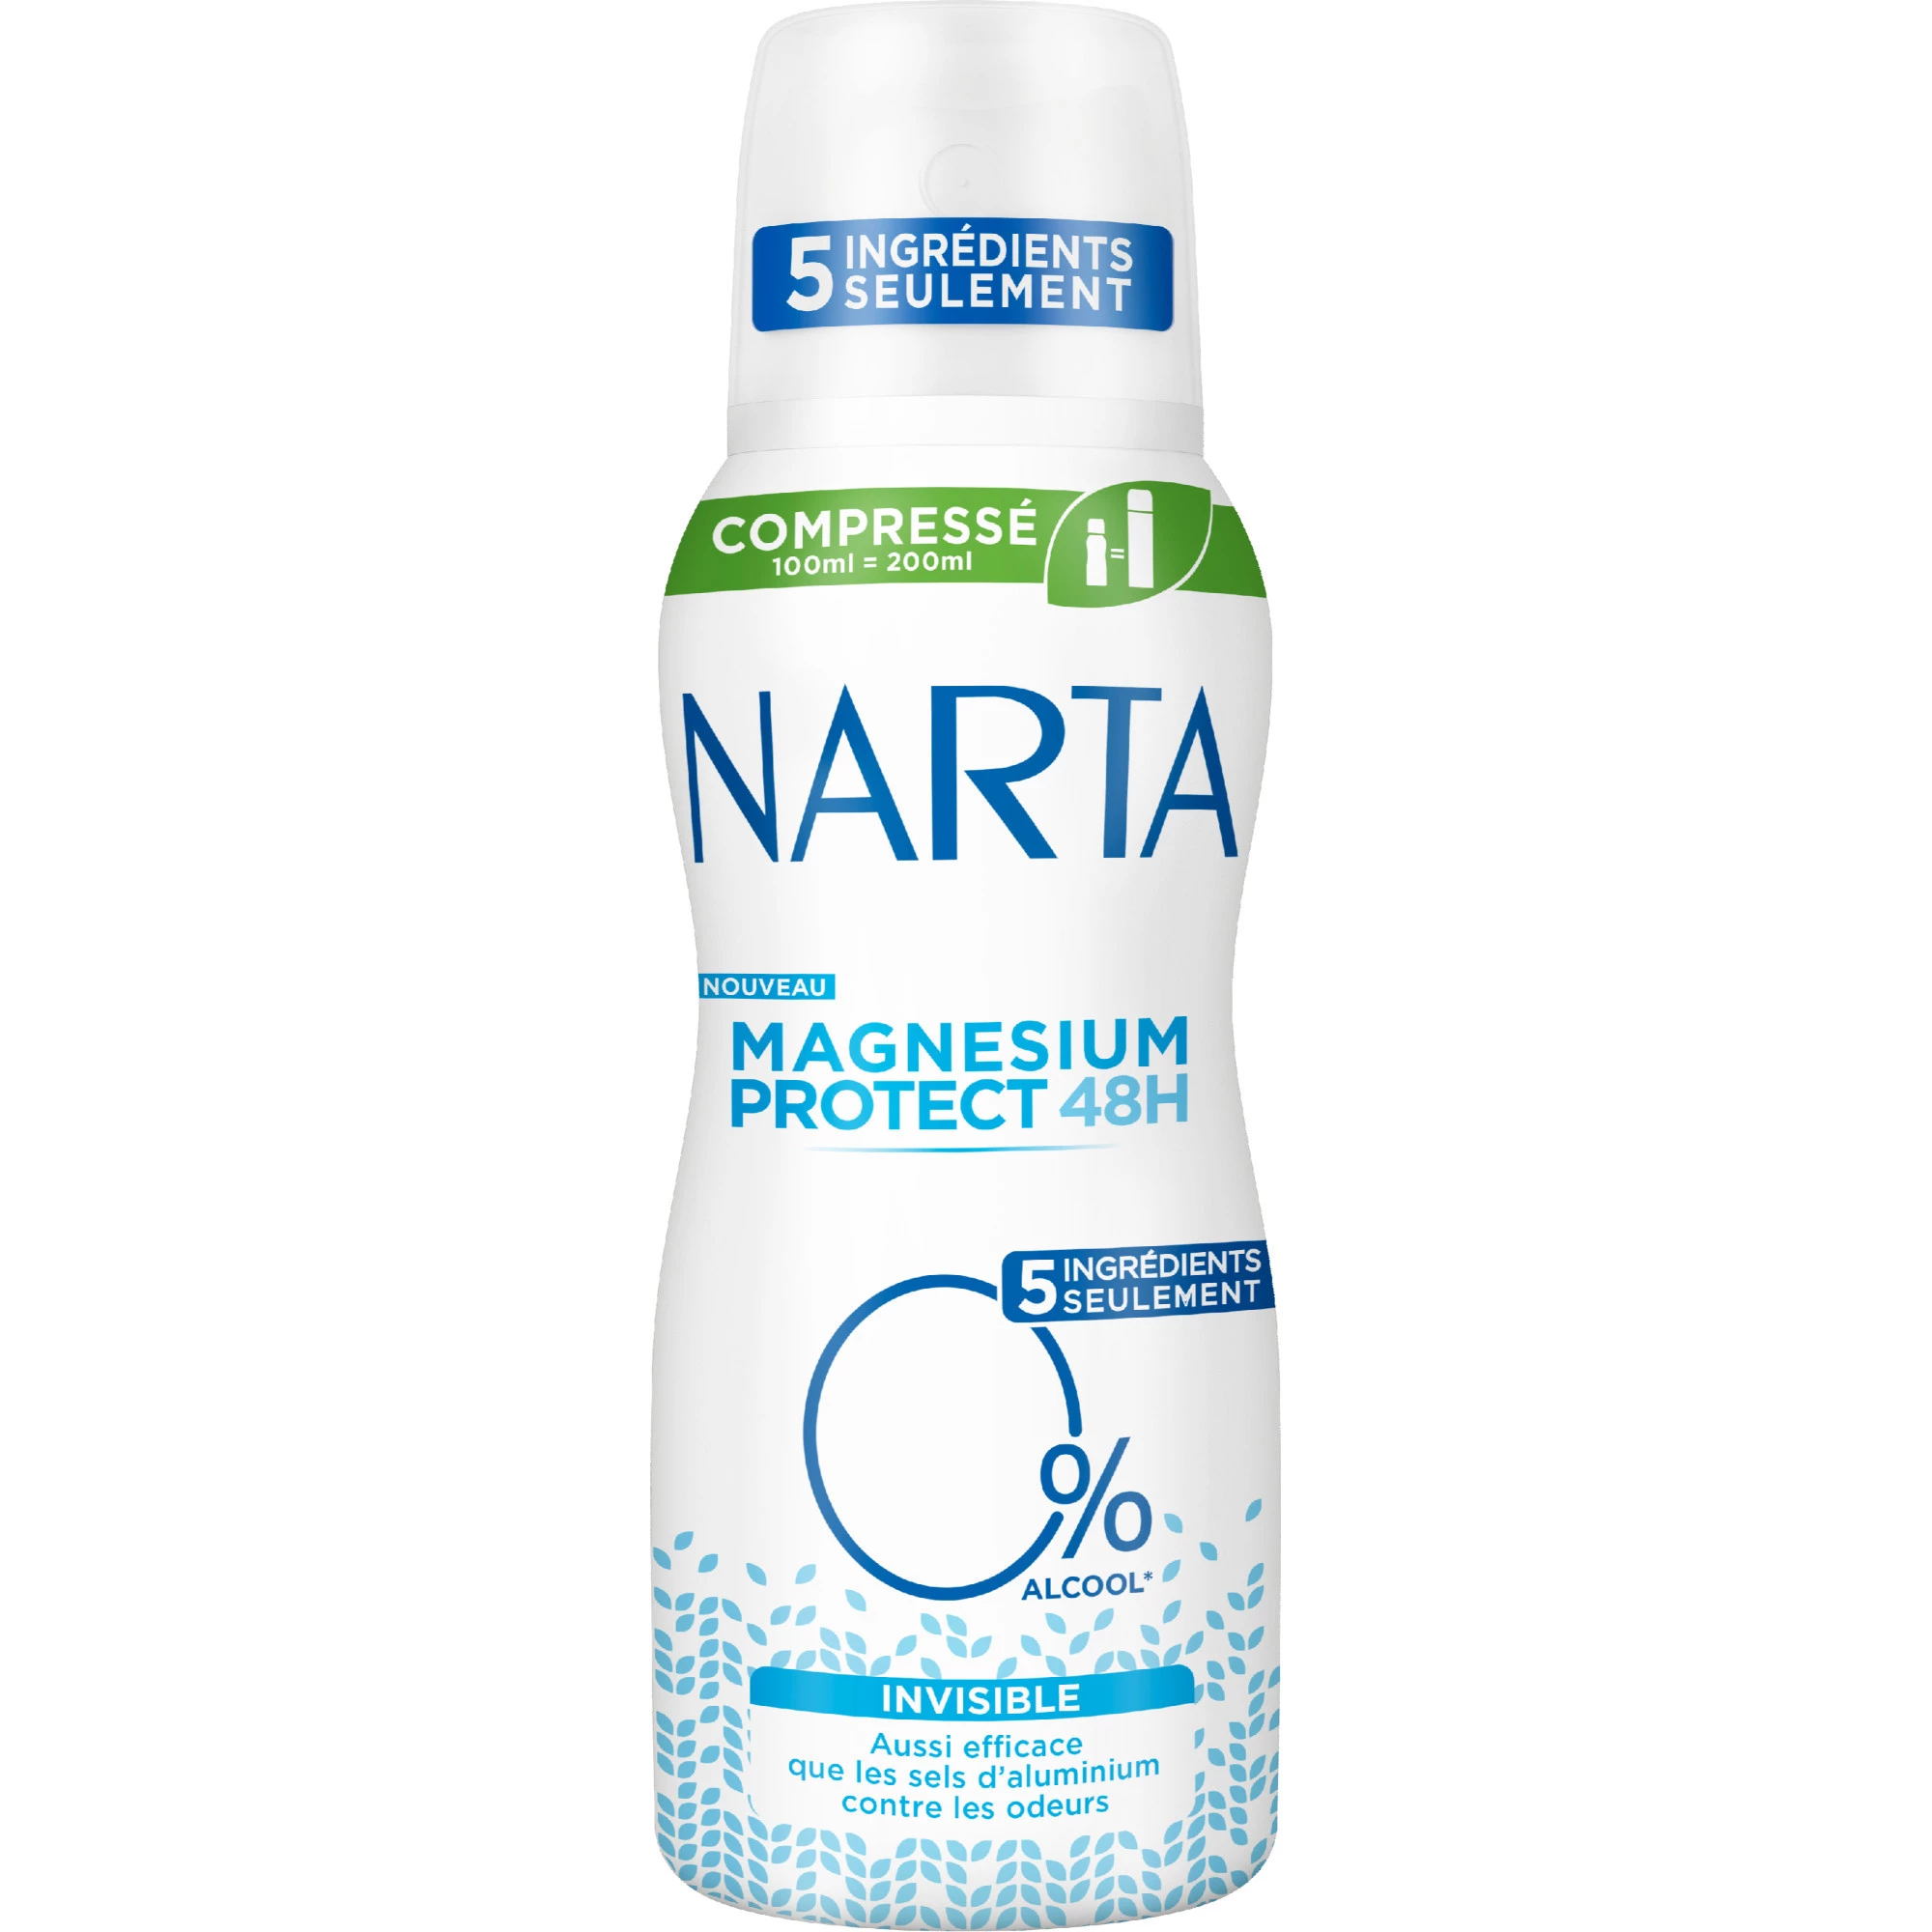 Magnesium protect invisible compressed deodorant 100ml - NARTA